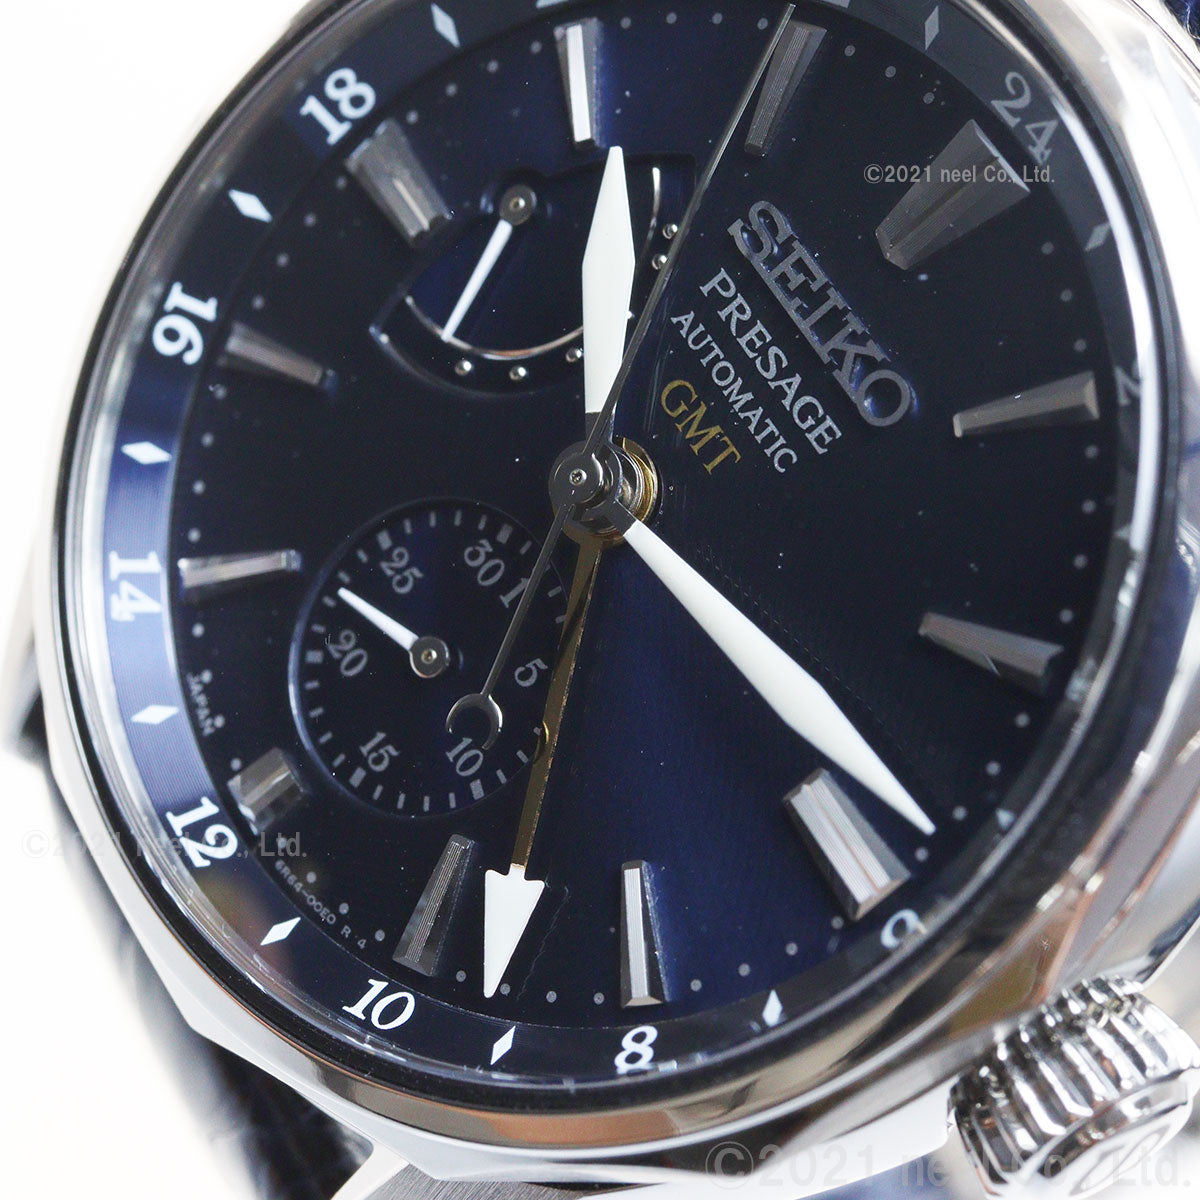 セイコー メカニカル プレザージュ オーシャントラベラー 限定モデル 日本製 自動巻き メンズ 腕時計 SARF013 SEIKO  Mechanical PRESAGE